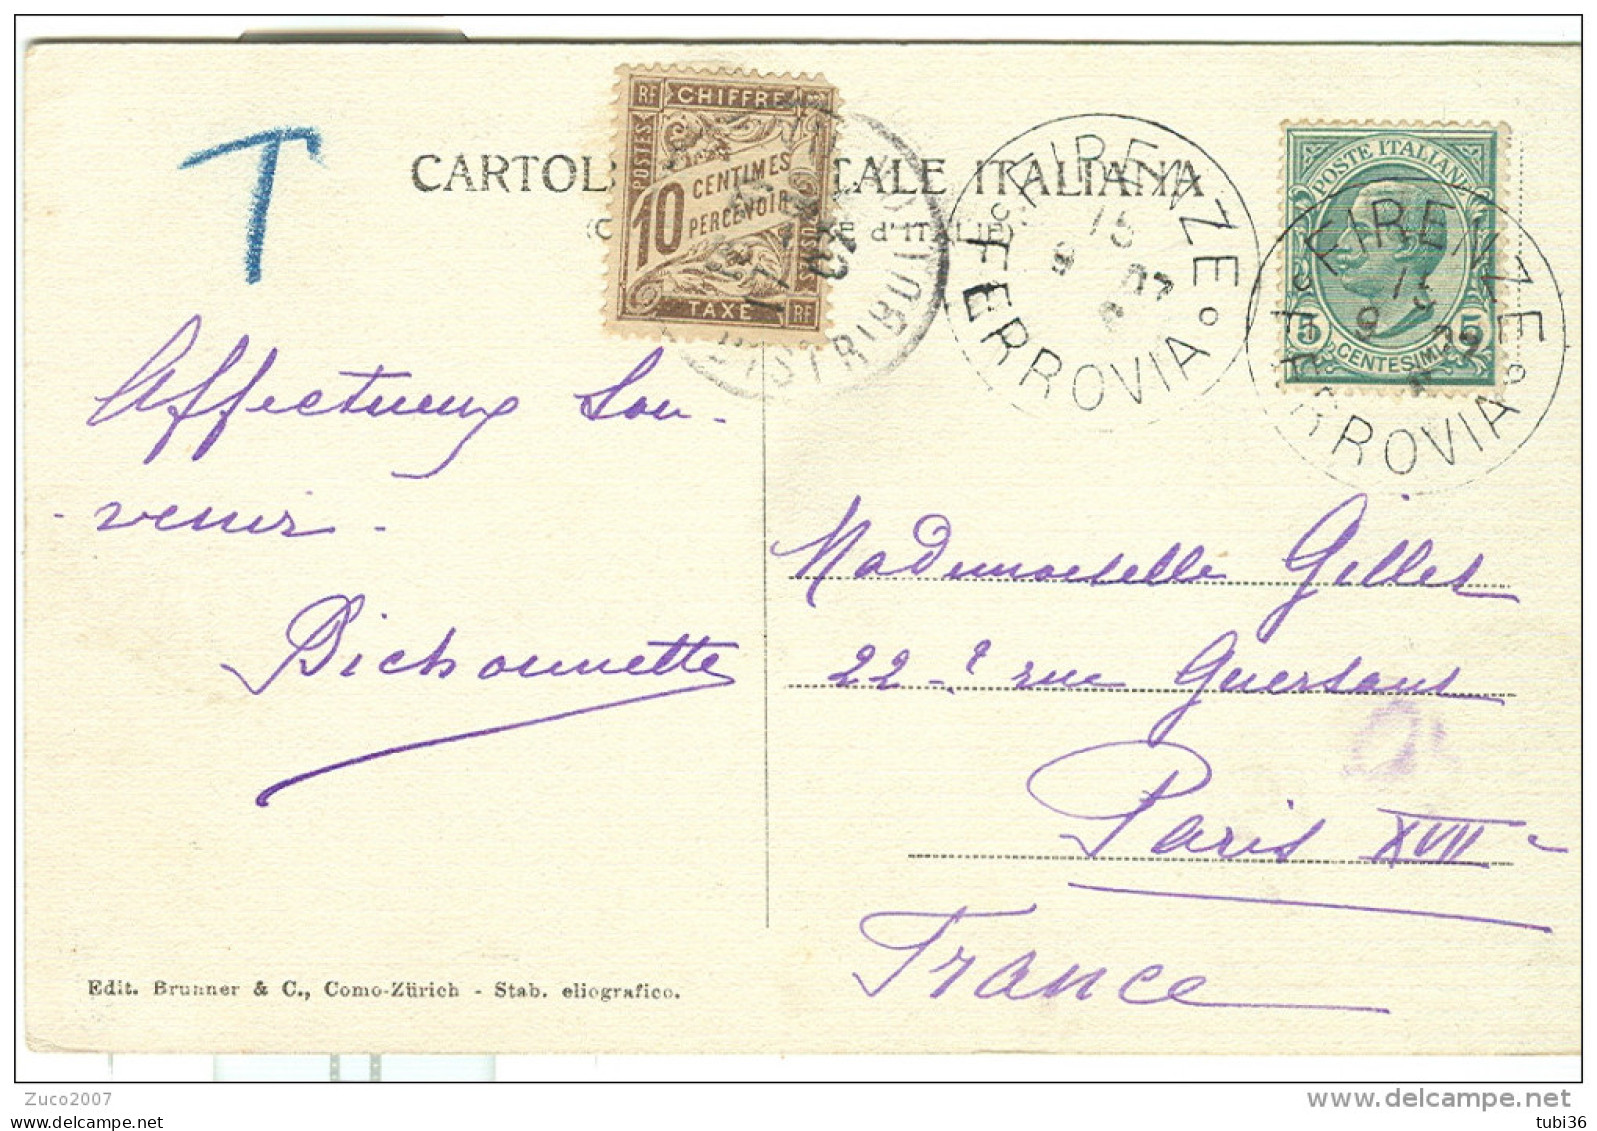 LEONI Cent.5 SU CARTOLINA B/N VIAGGIATA  1907, FIRENZE-PARIGI, TASSATA FRANCIA Cent.10,FIRENZE BATTISTERO - Postage Due